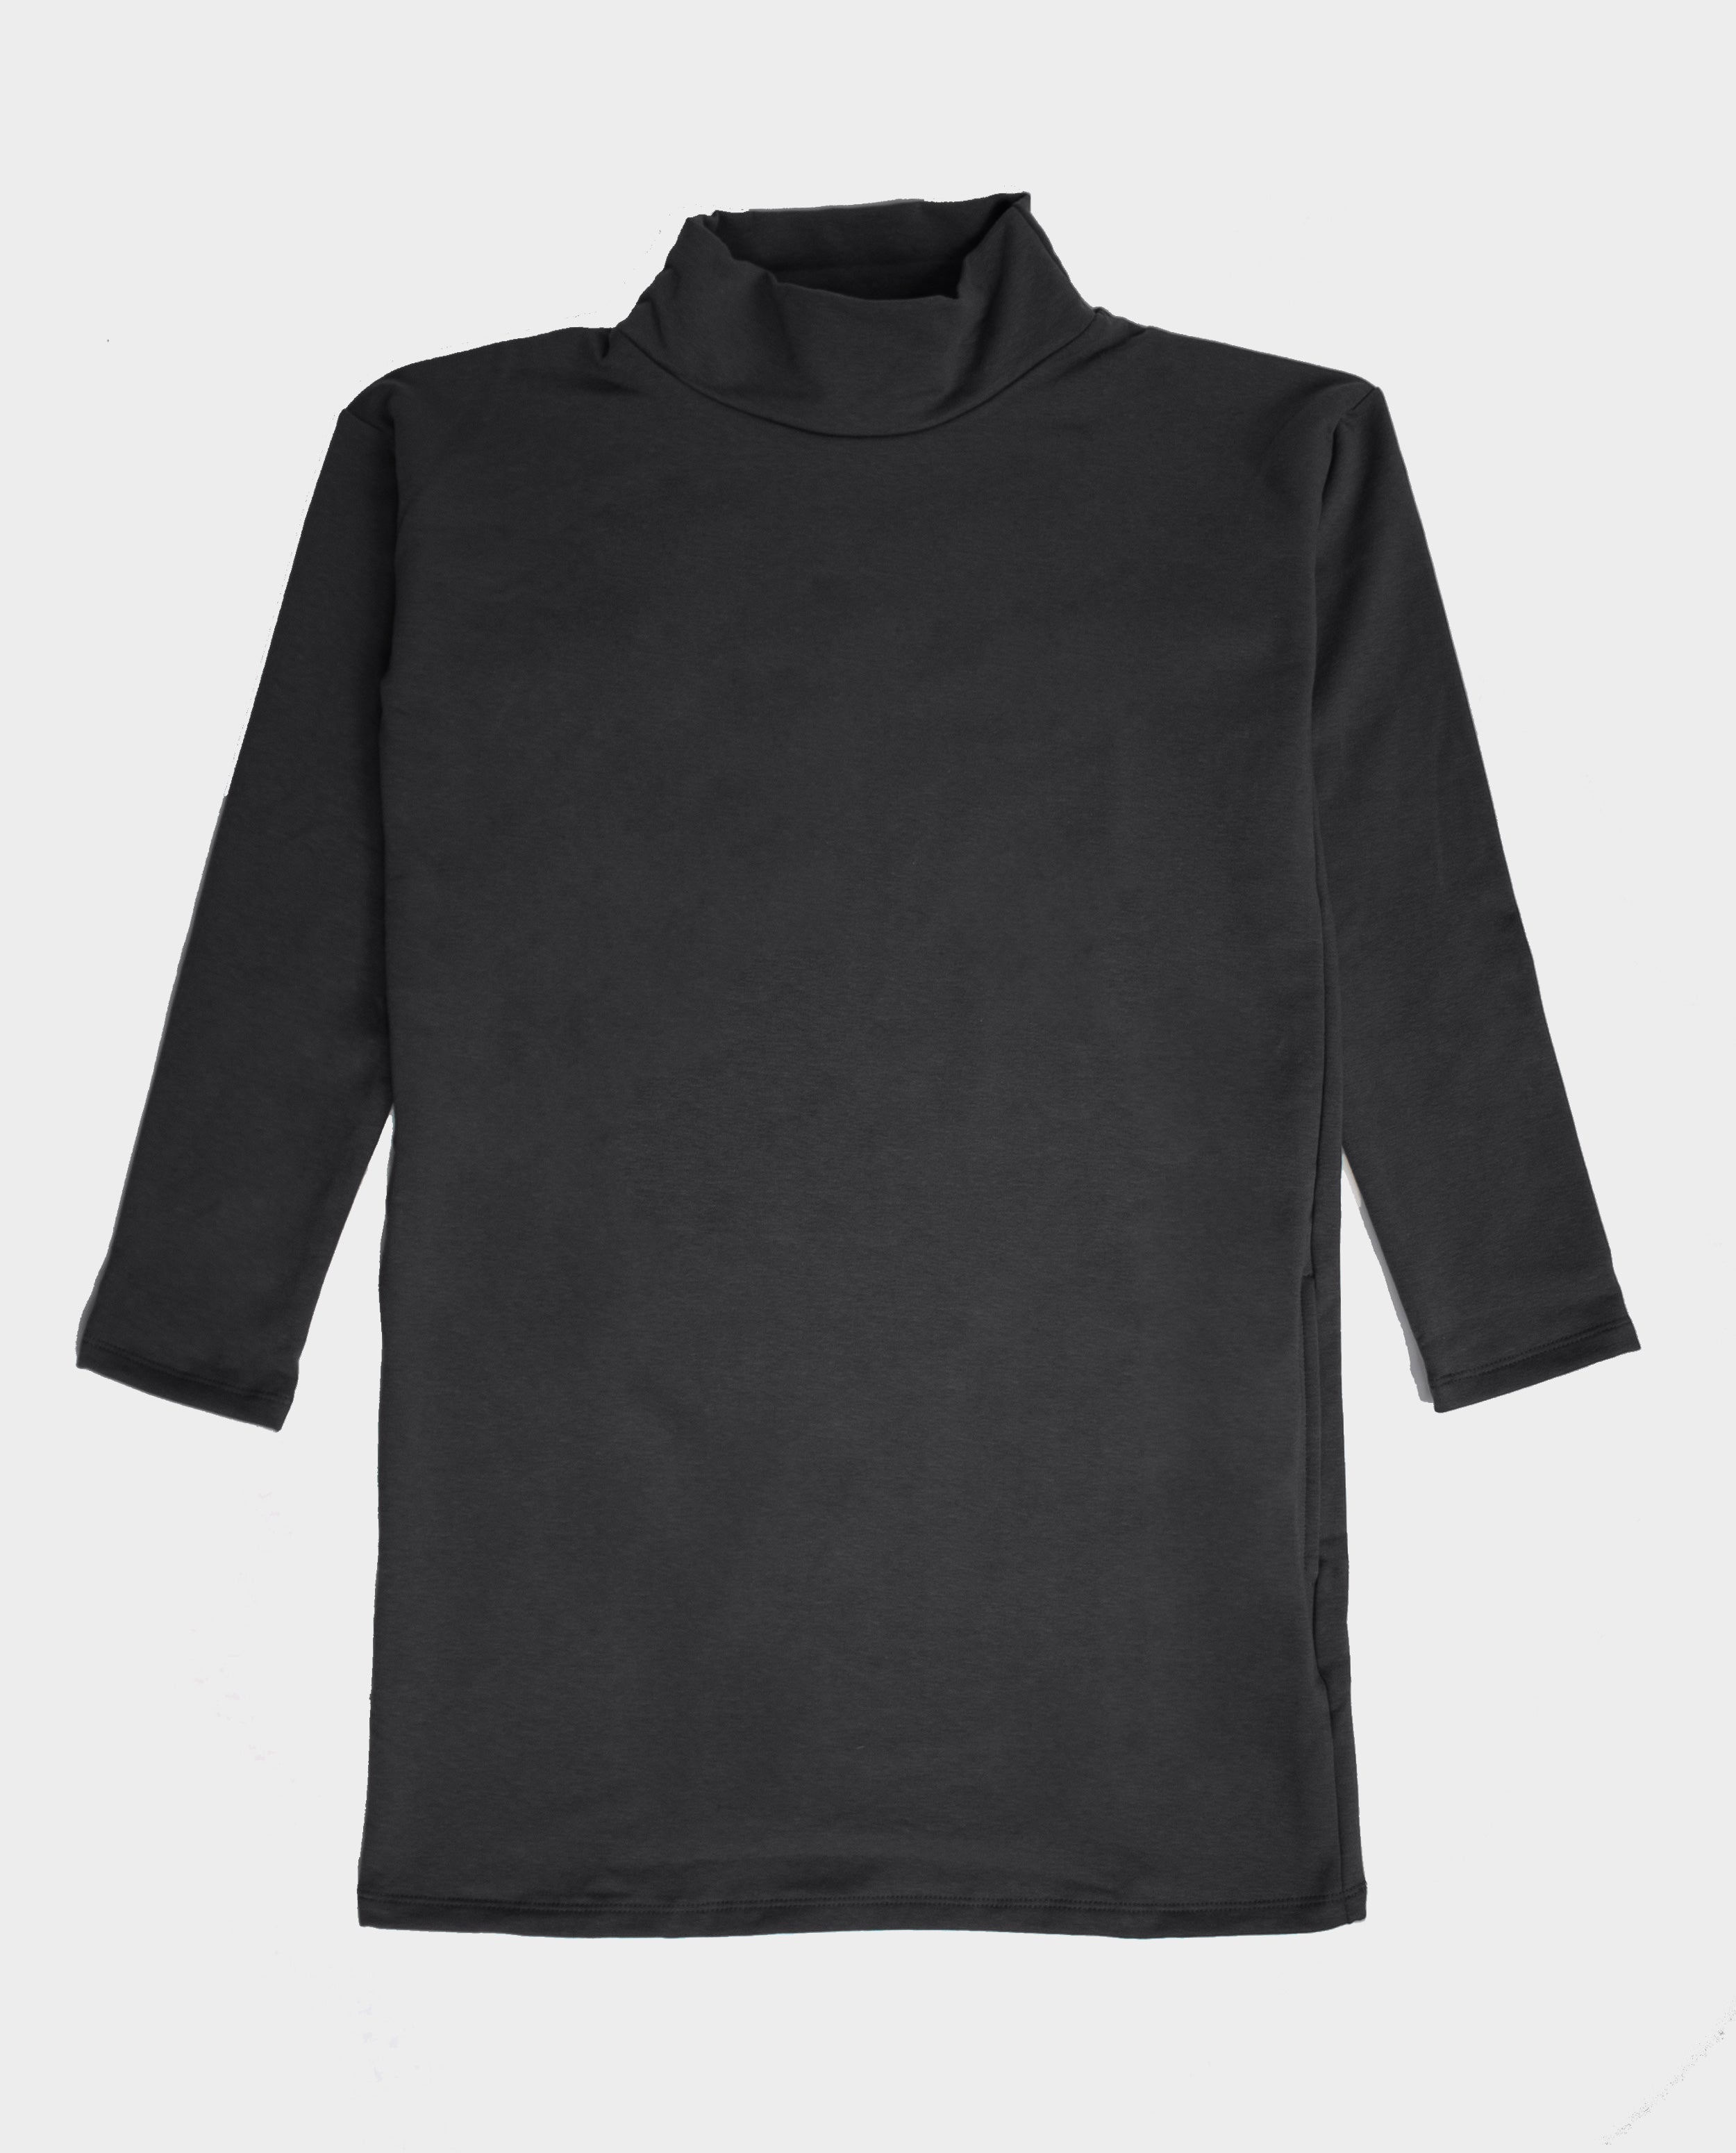 The Funnelneck Sweatshirt Dress | FRANC Sustainable Clothing